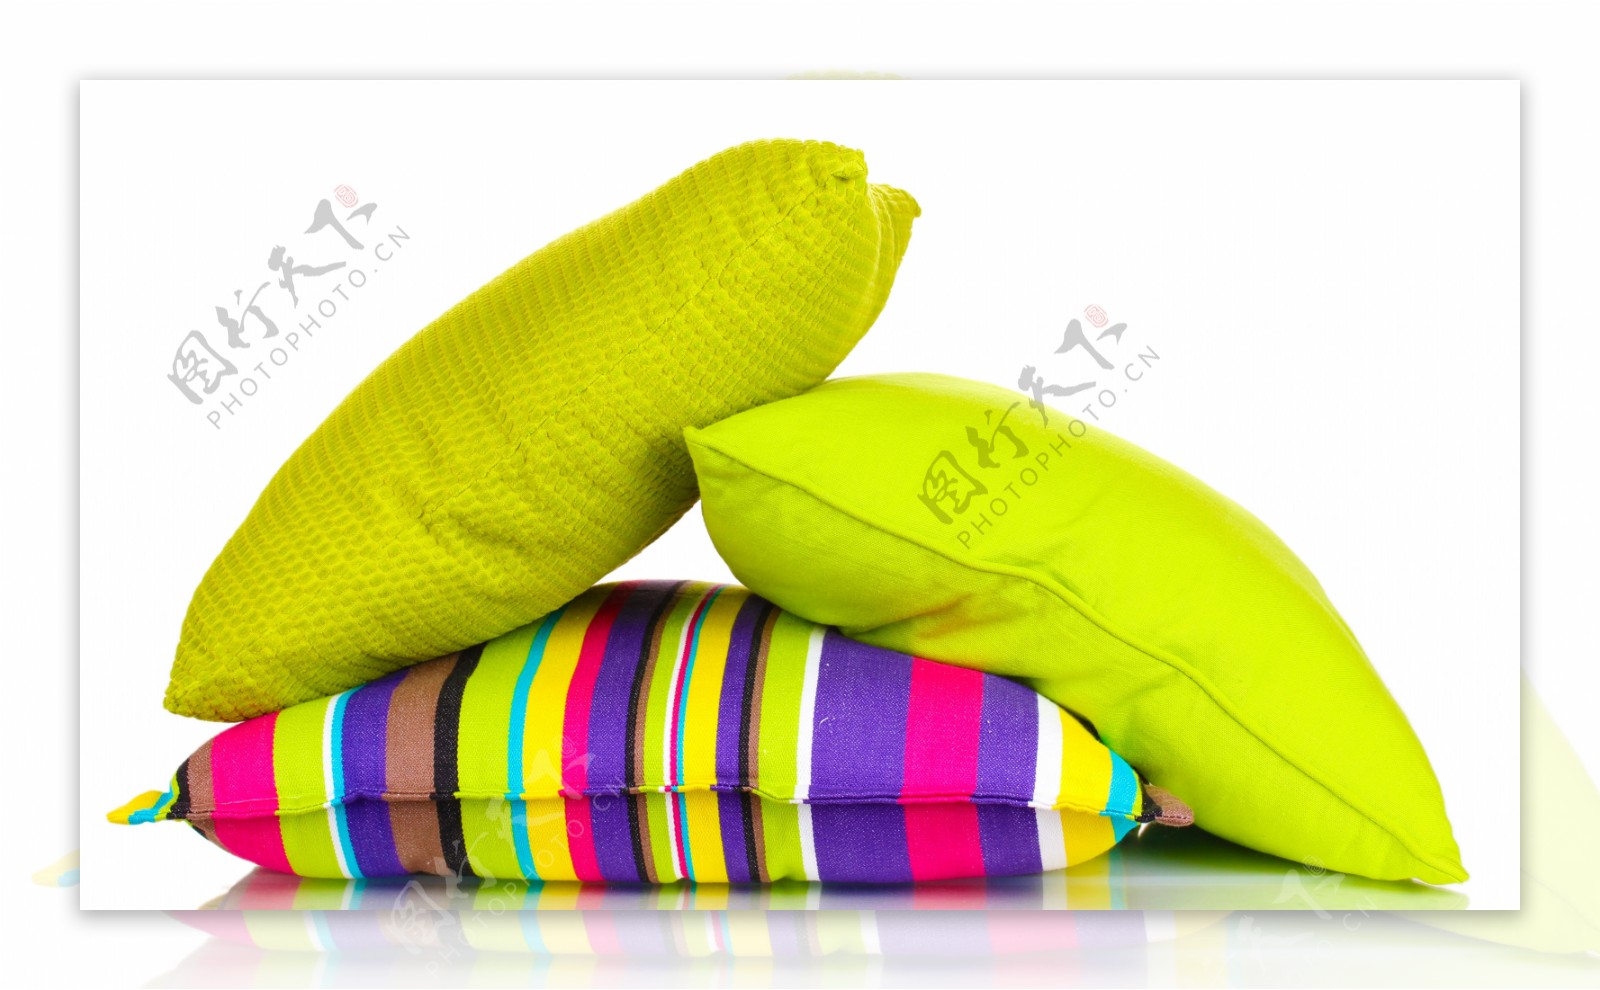 绿色枕头与彩色枕头